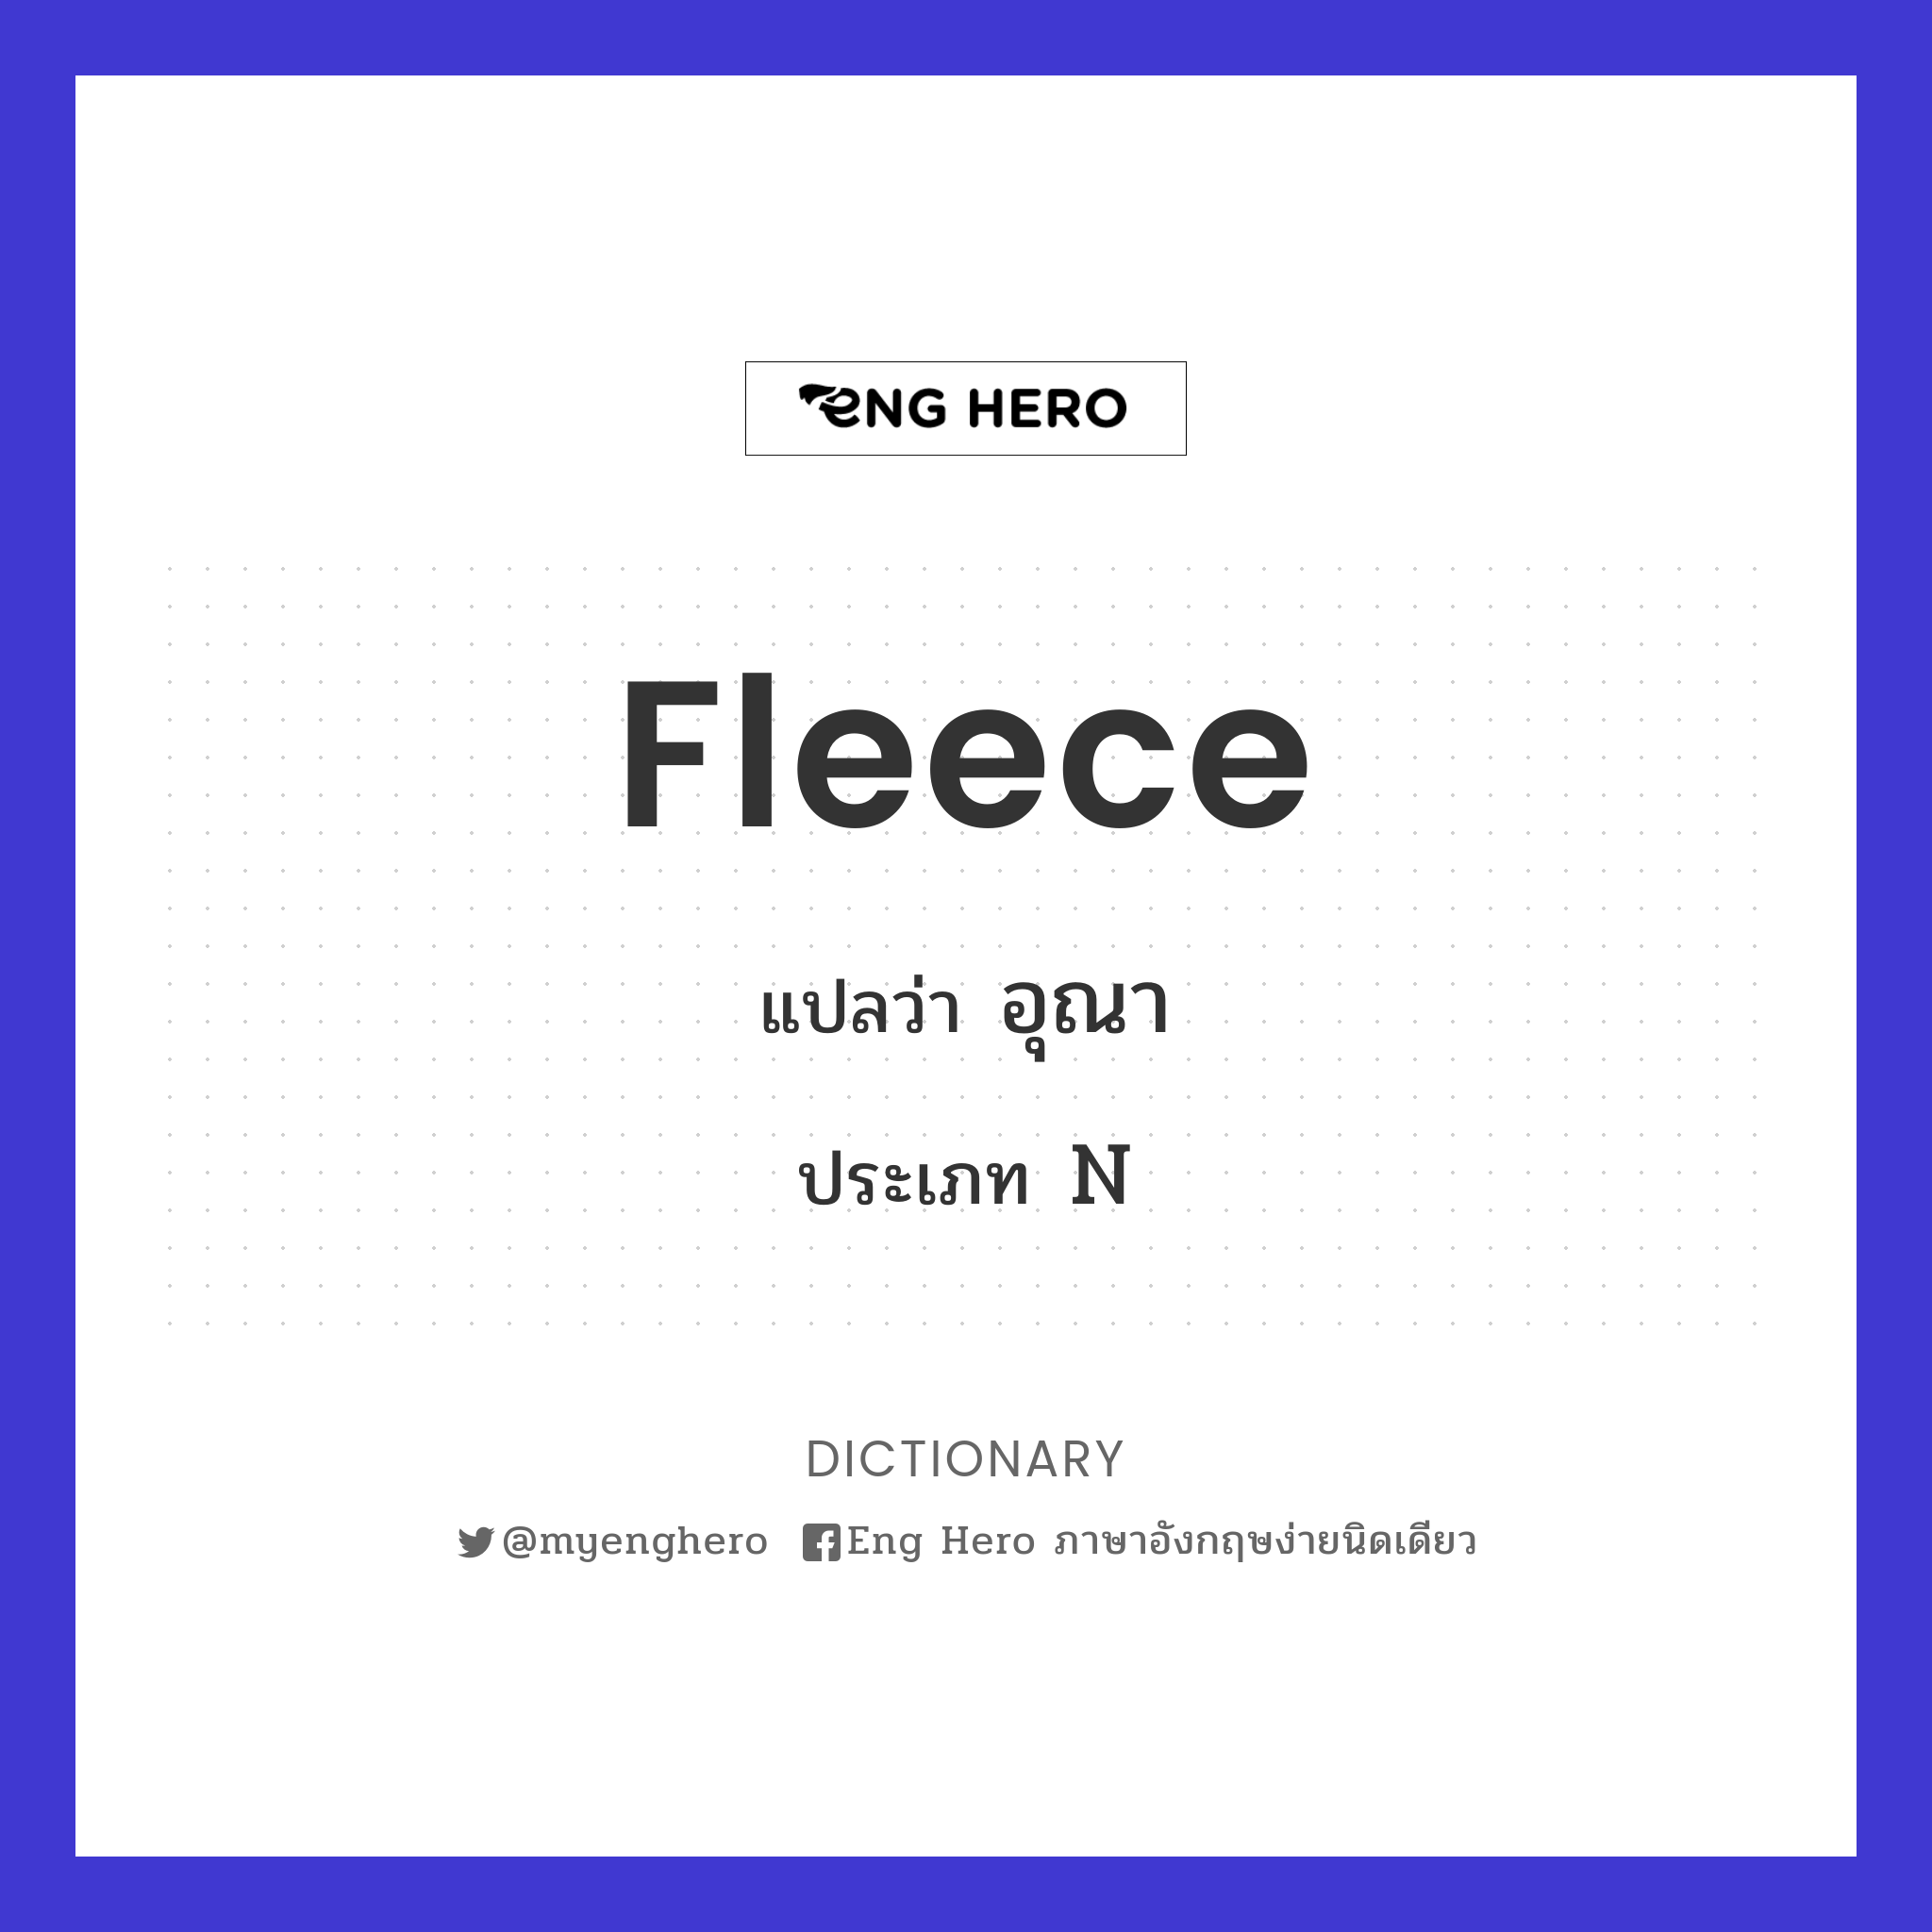 fleece